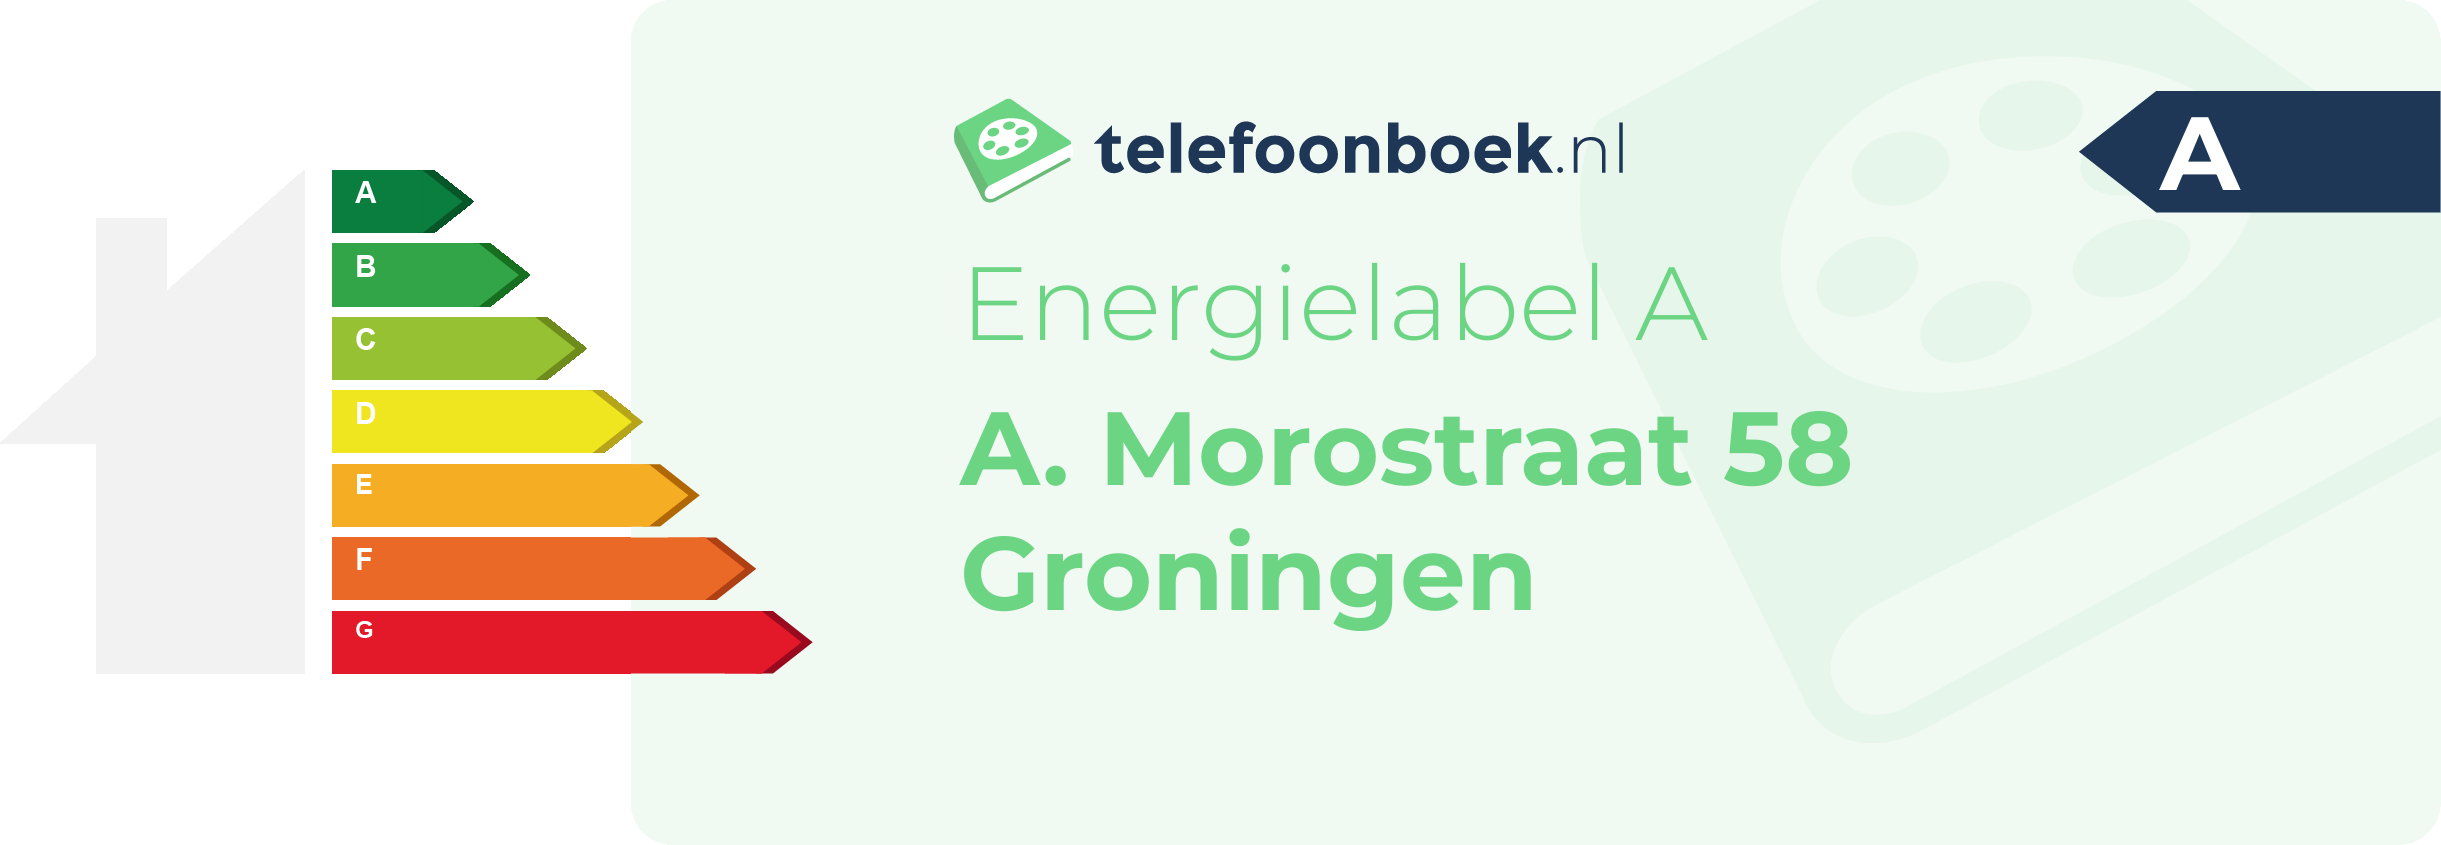 Energielabel A. Morostraat 58 Groningen